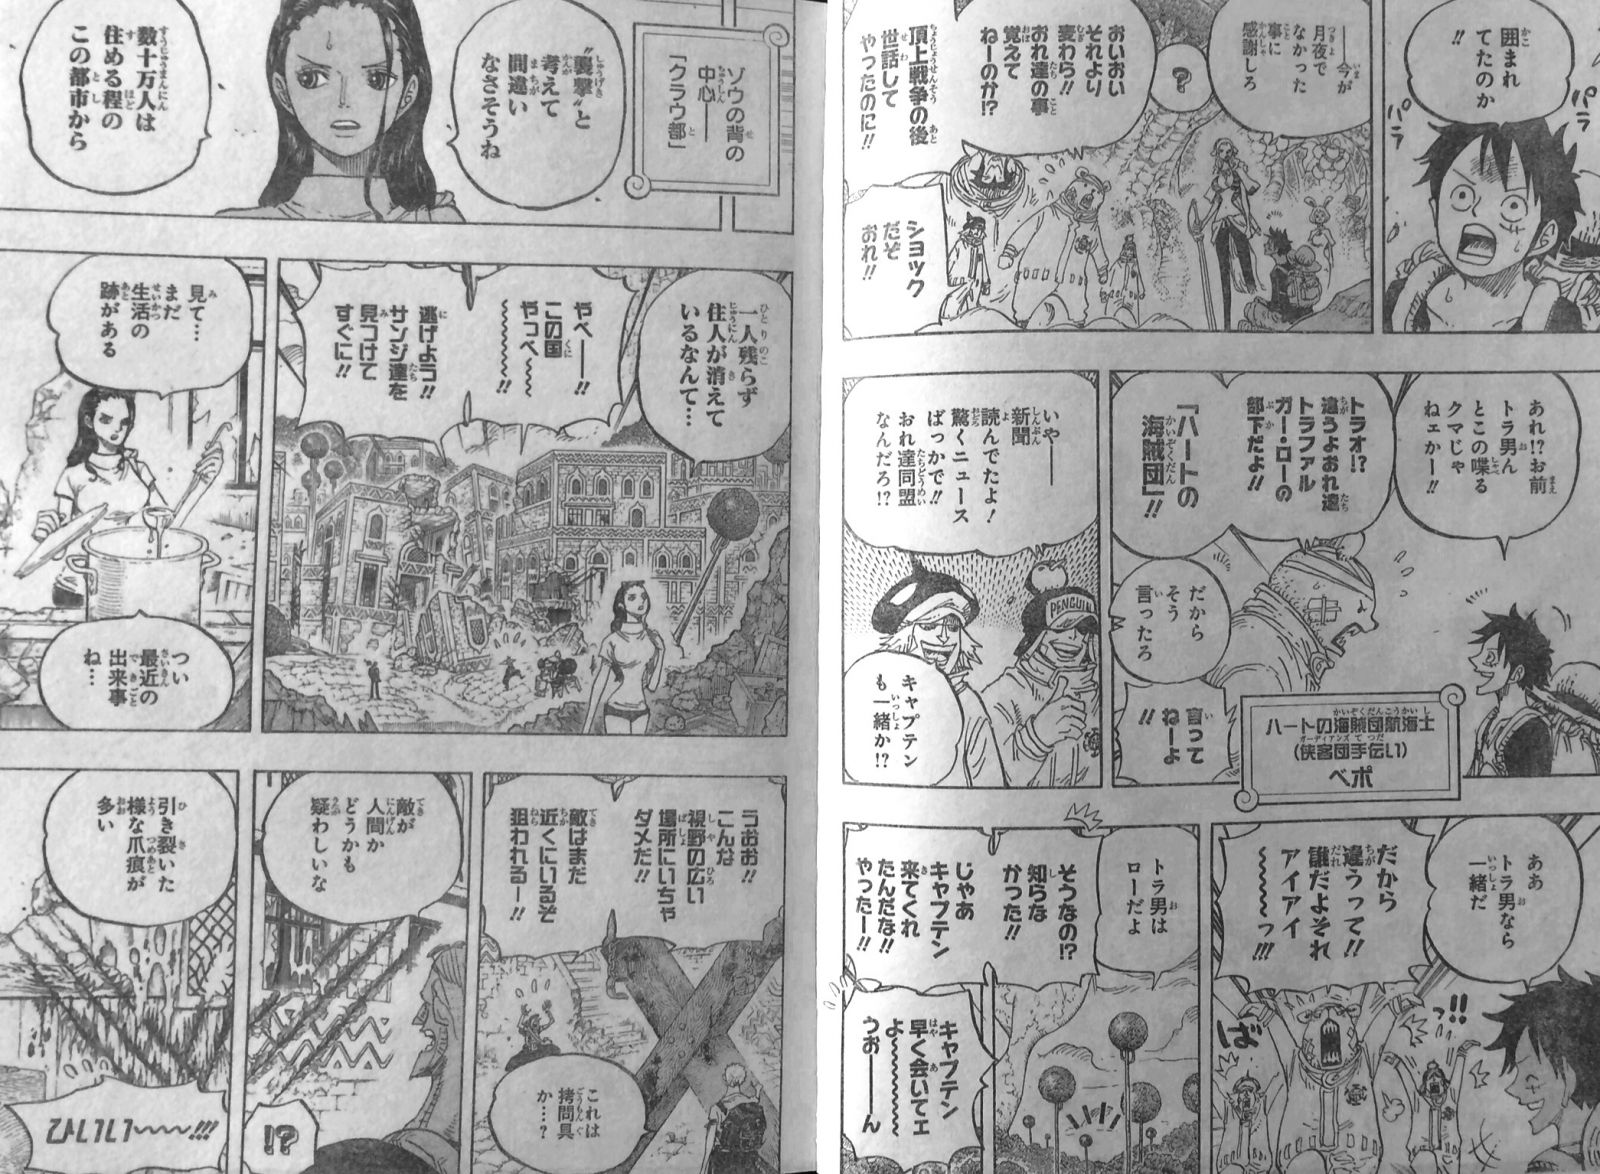 第805話 ミンク族 ベポはミンク族 モコモ公国滅ぼしたジャックとは サンジ達死んだ One Piece ワンピース 道場 アニメ 漫画 まにあ道 趣味と遊びを極めるサイト